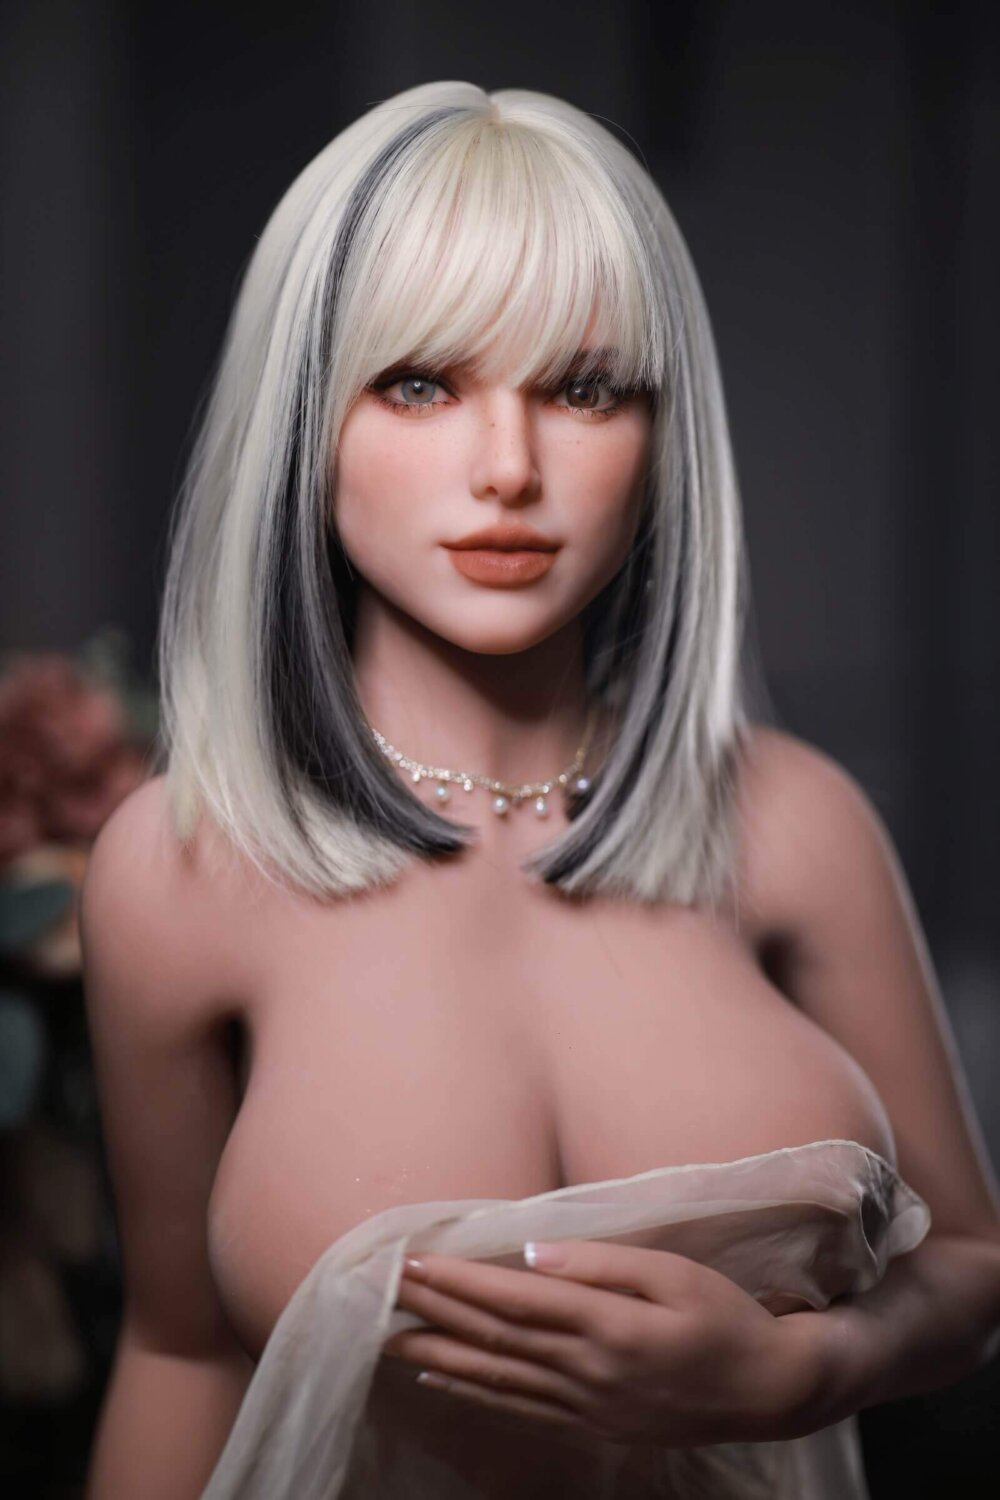 SexDoll kurzes blondes Haar mit schwarzen Akzenten, zwei verschiedenfarbige Augen, große Lippen, große Brüste mit Stoff bedeckt, silberne Halskette